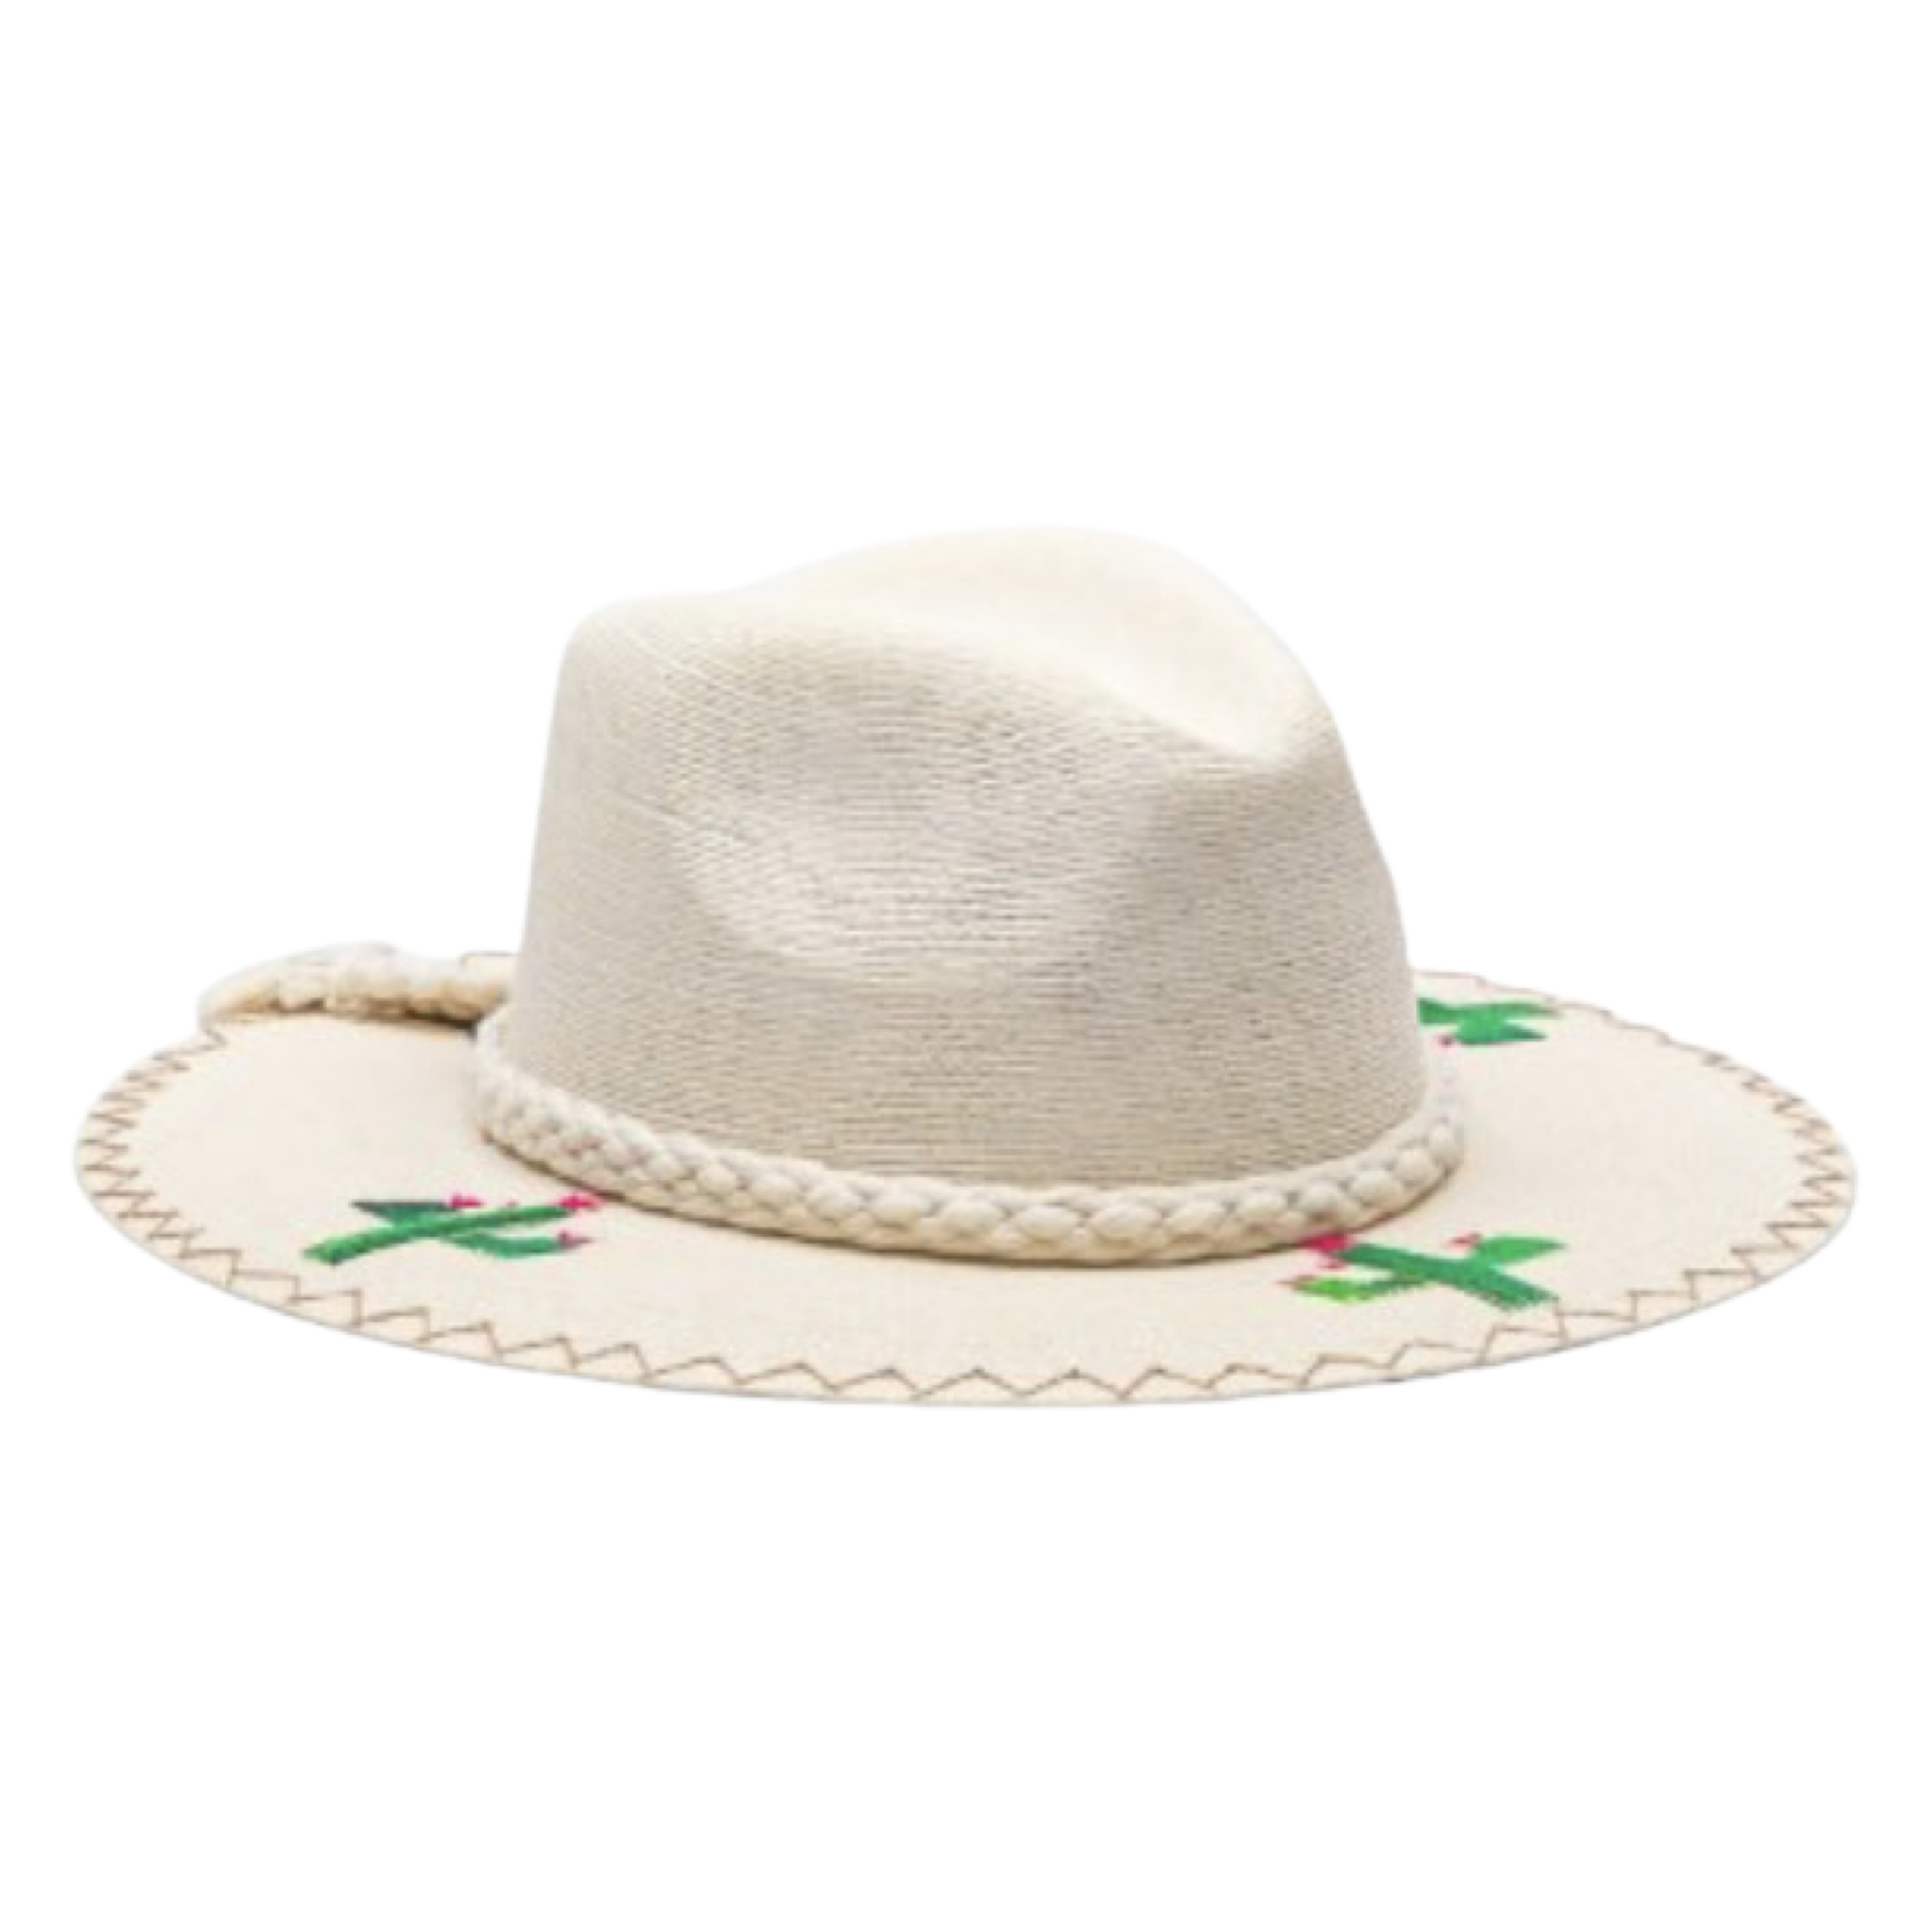 Exclusive Cactus Hat by Corazon Playero - Preorder